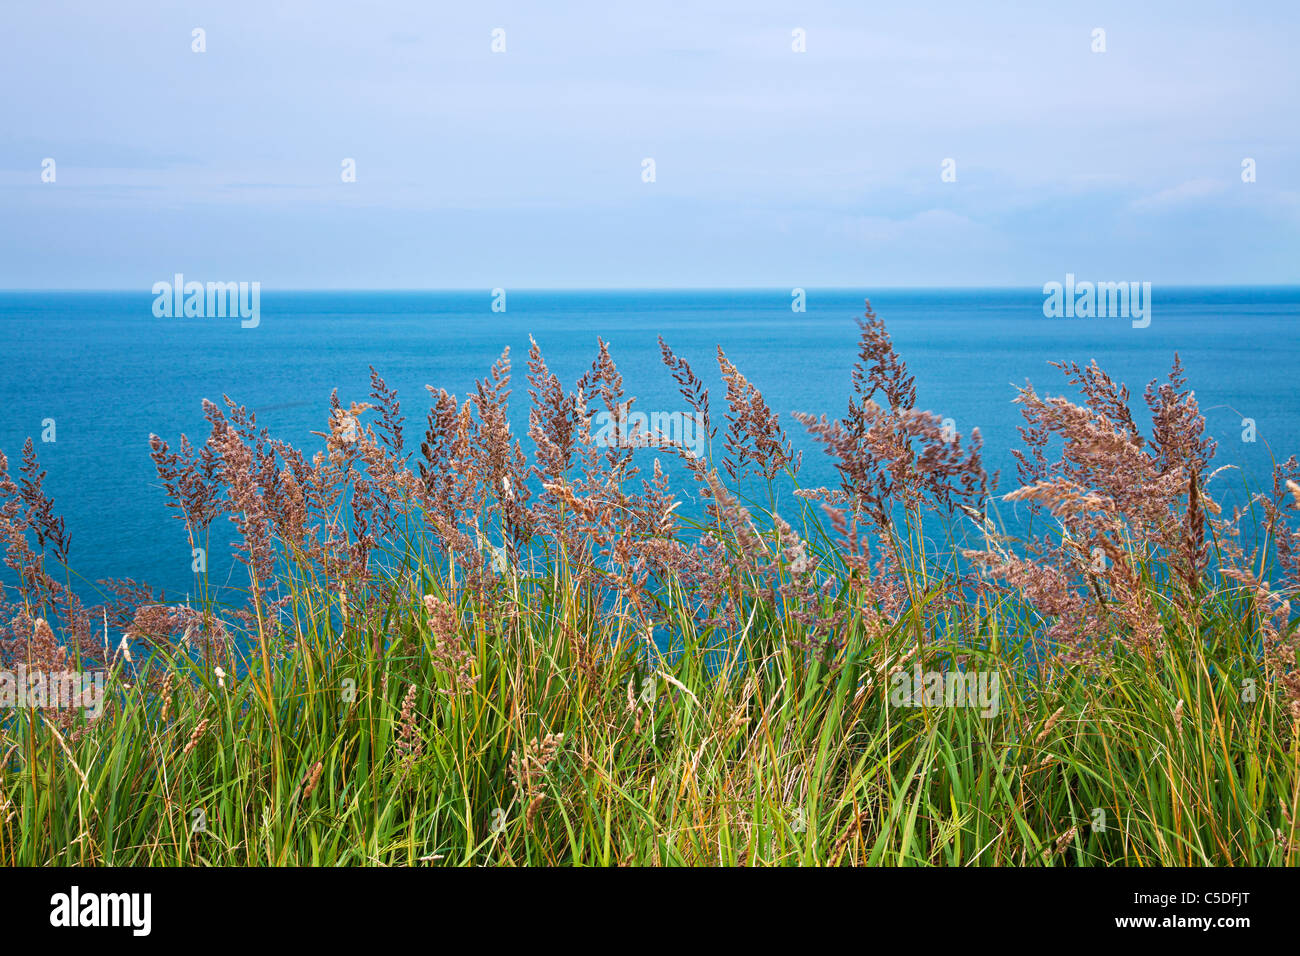 Una semplice immagine di erbe costiera con il blu del mare e l'orizzonte al di là. Foto Stock